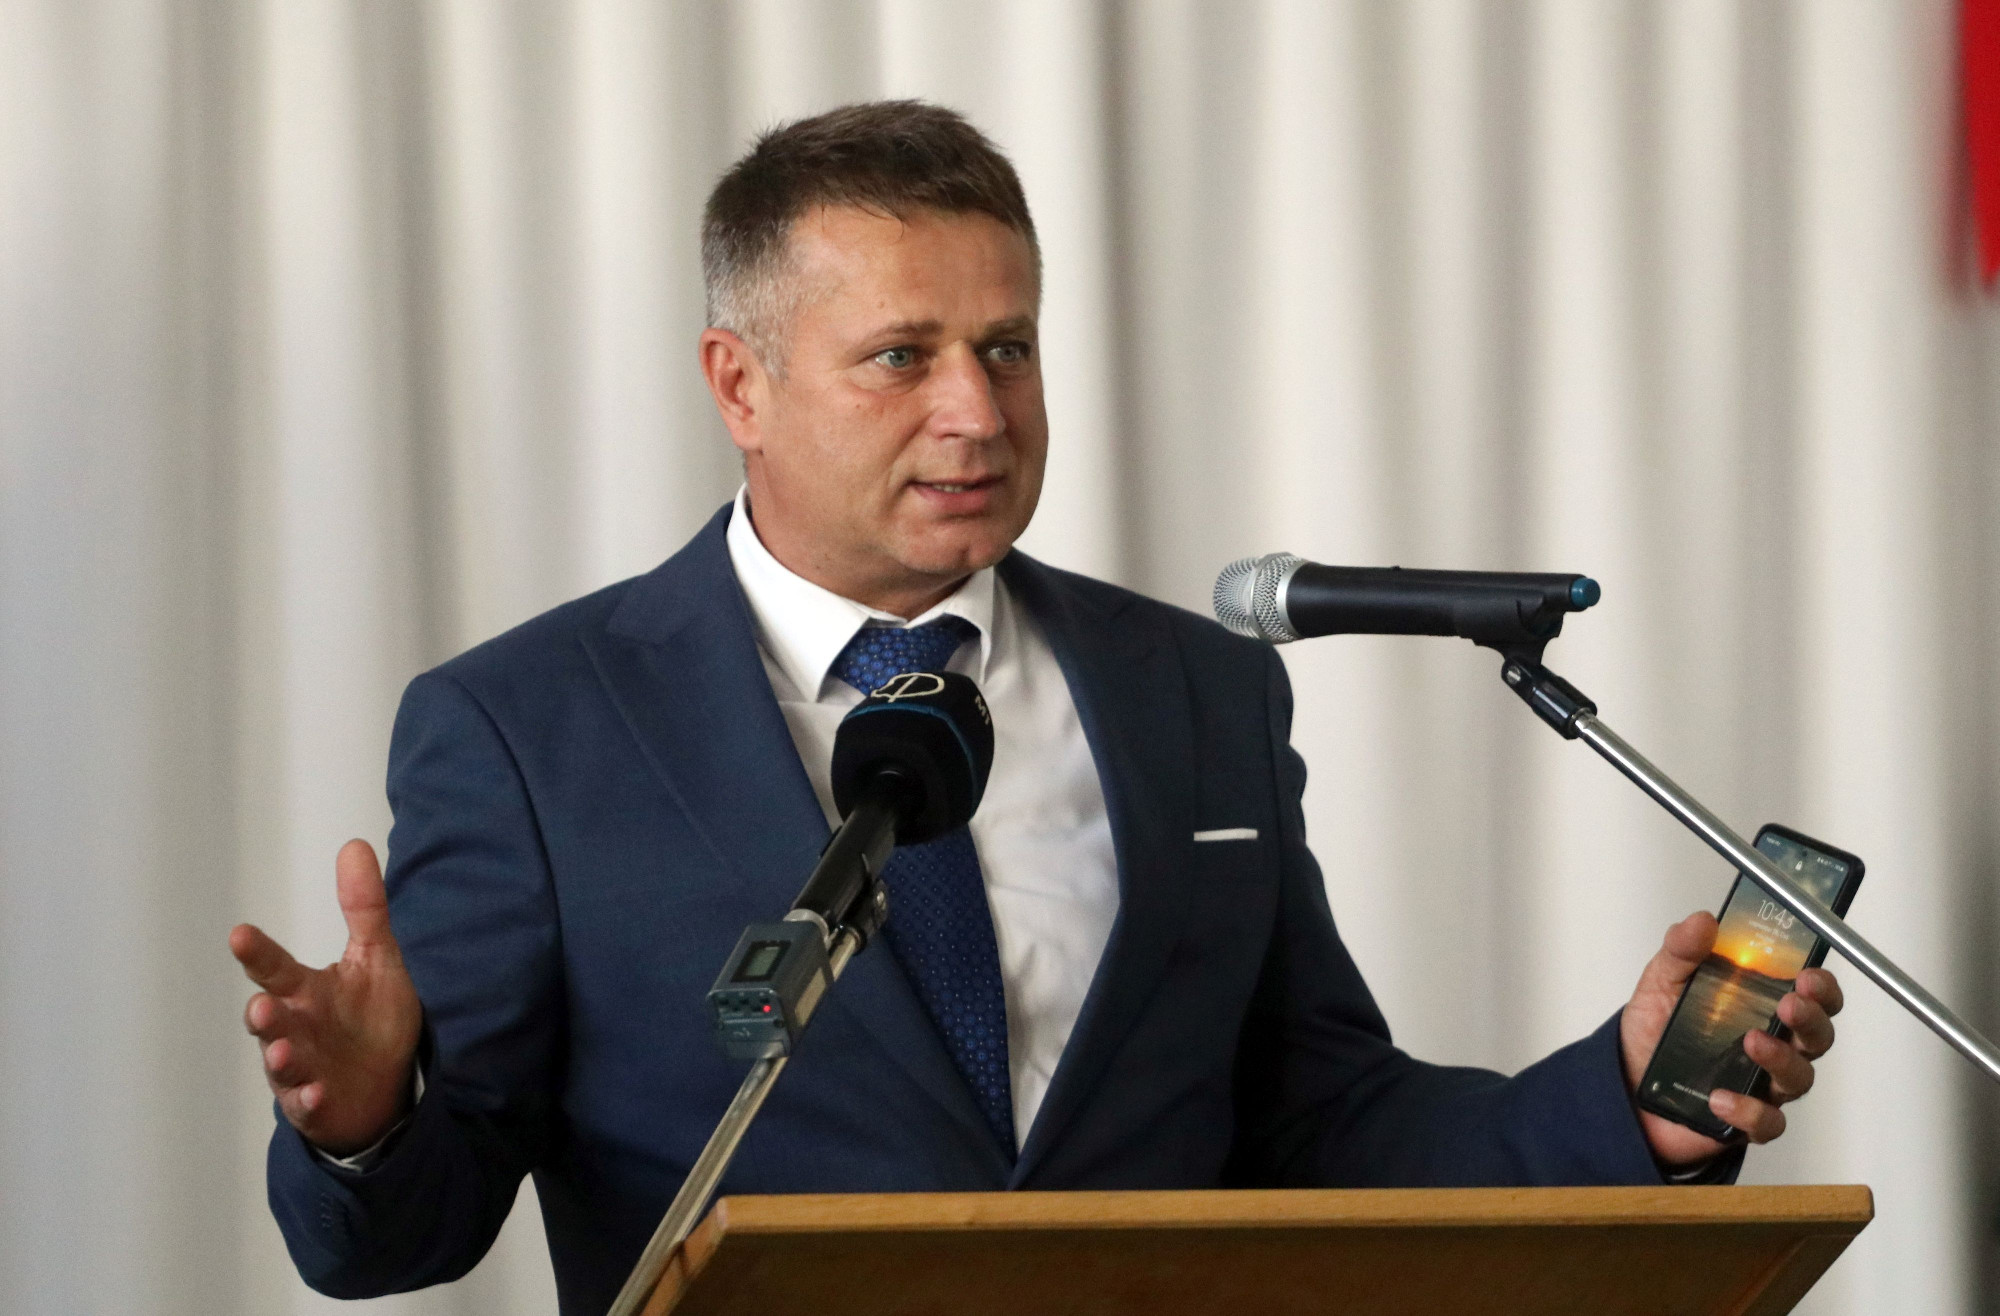 Hathavi jutalmat szavaztak meg egy leköszönő fideszes polgármesternek